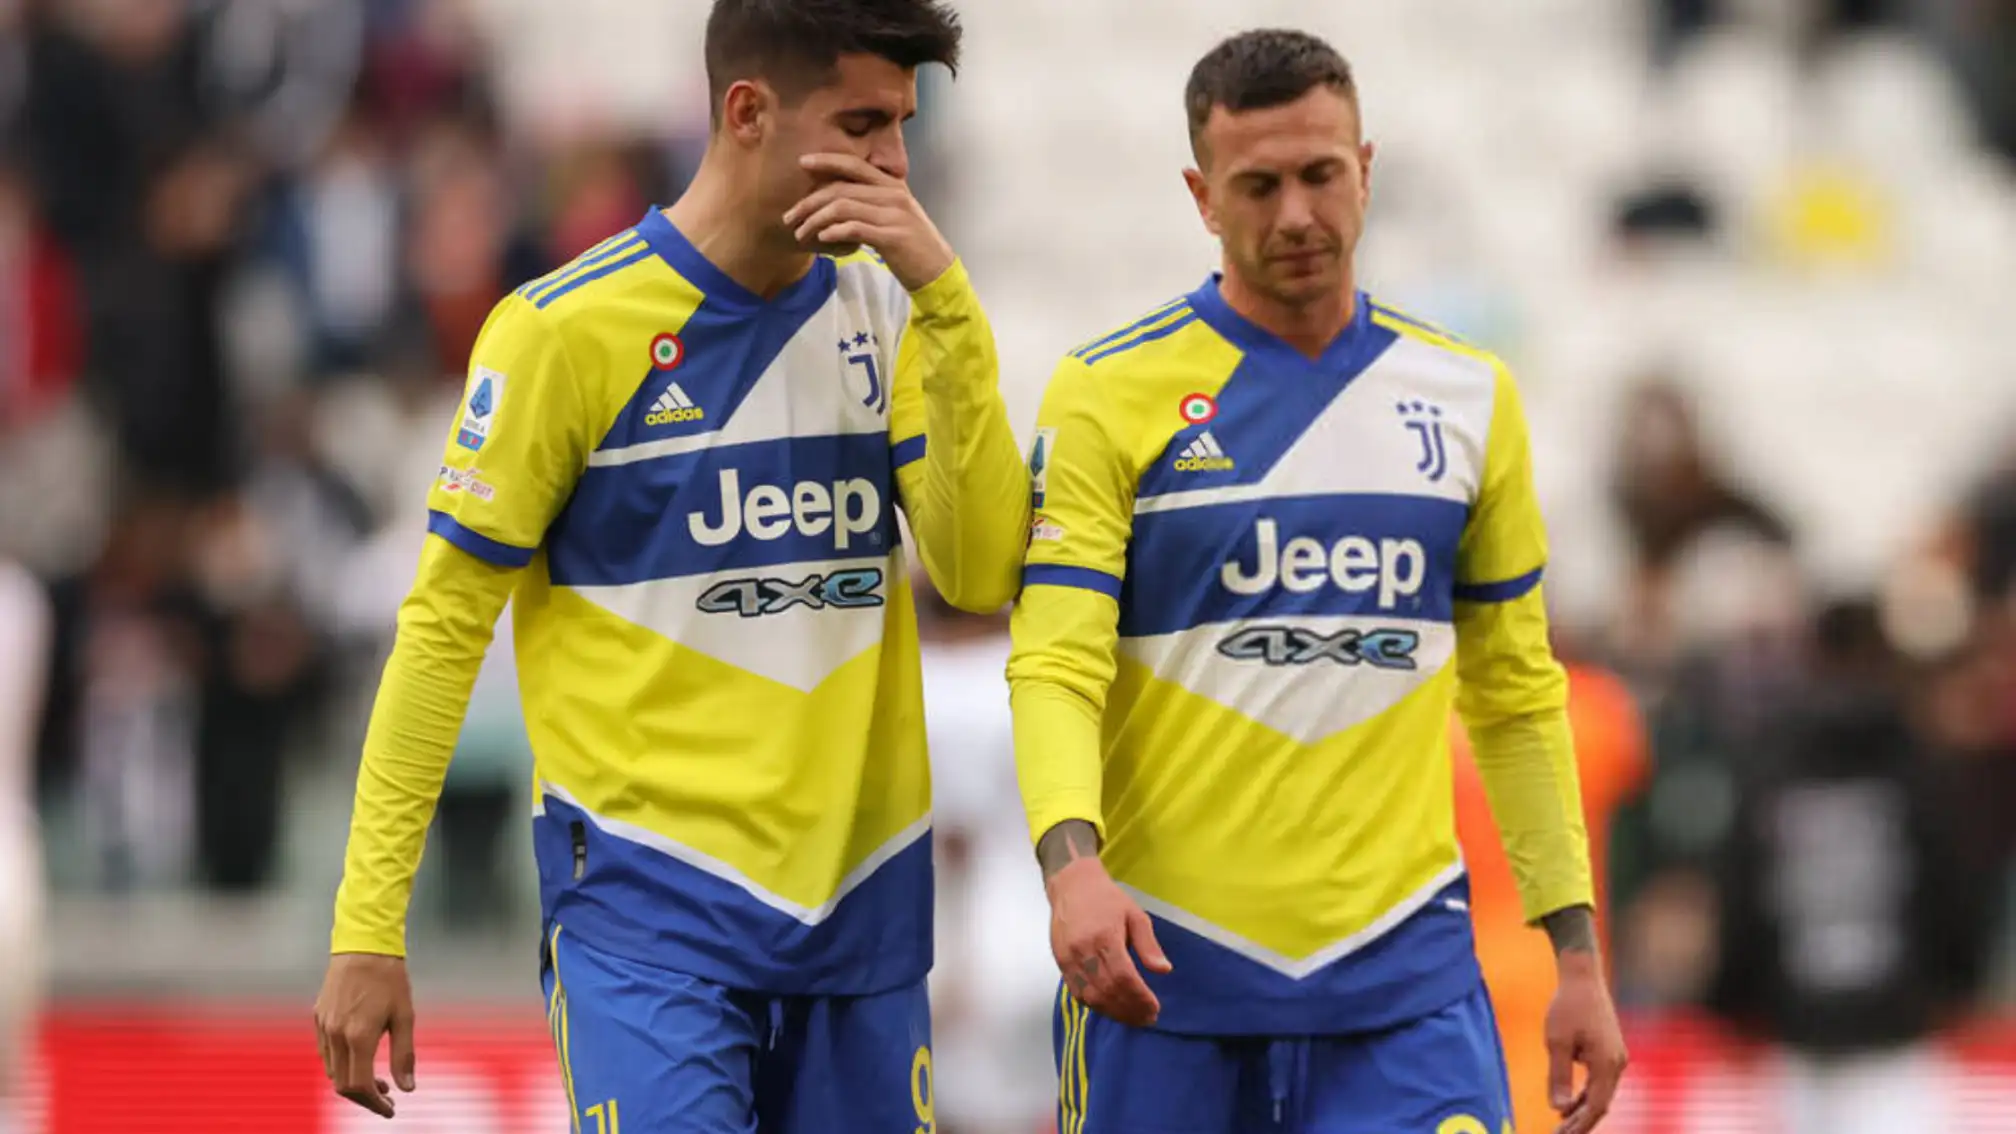 Juventus will Morata und Bernard eschi verlieren, nachdem er sich gegen ein neues Vertrags angebot entschieden hat